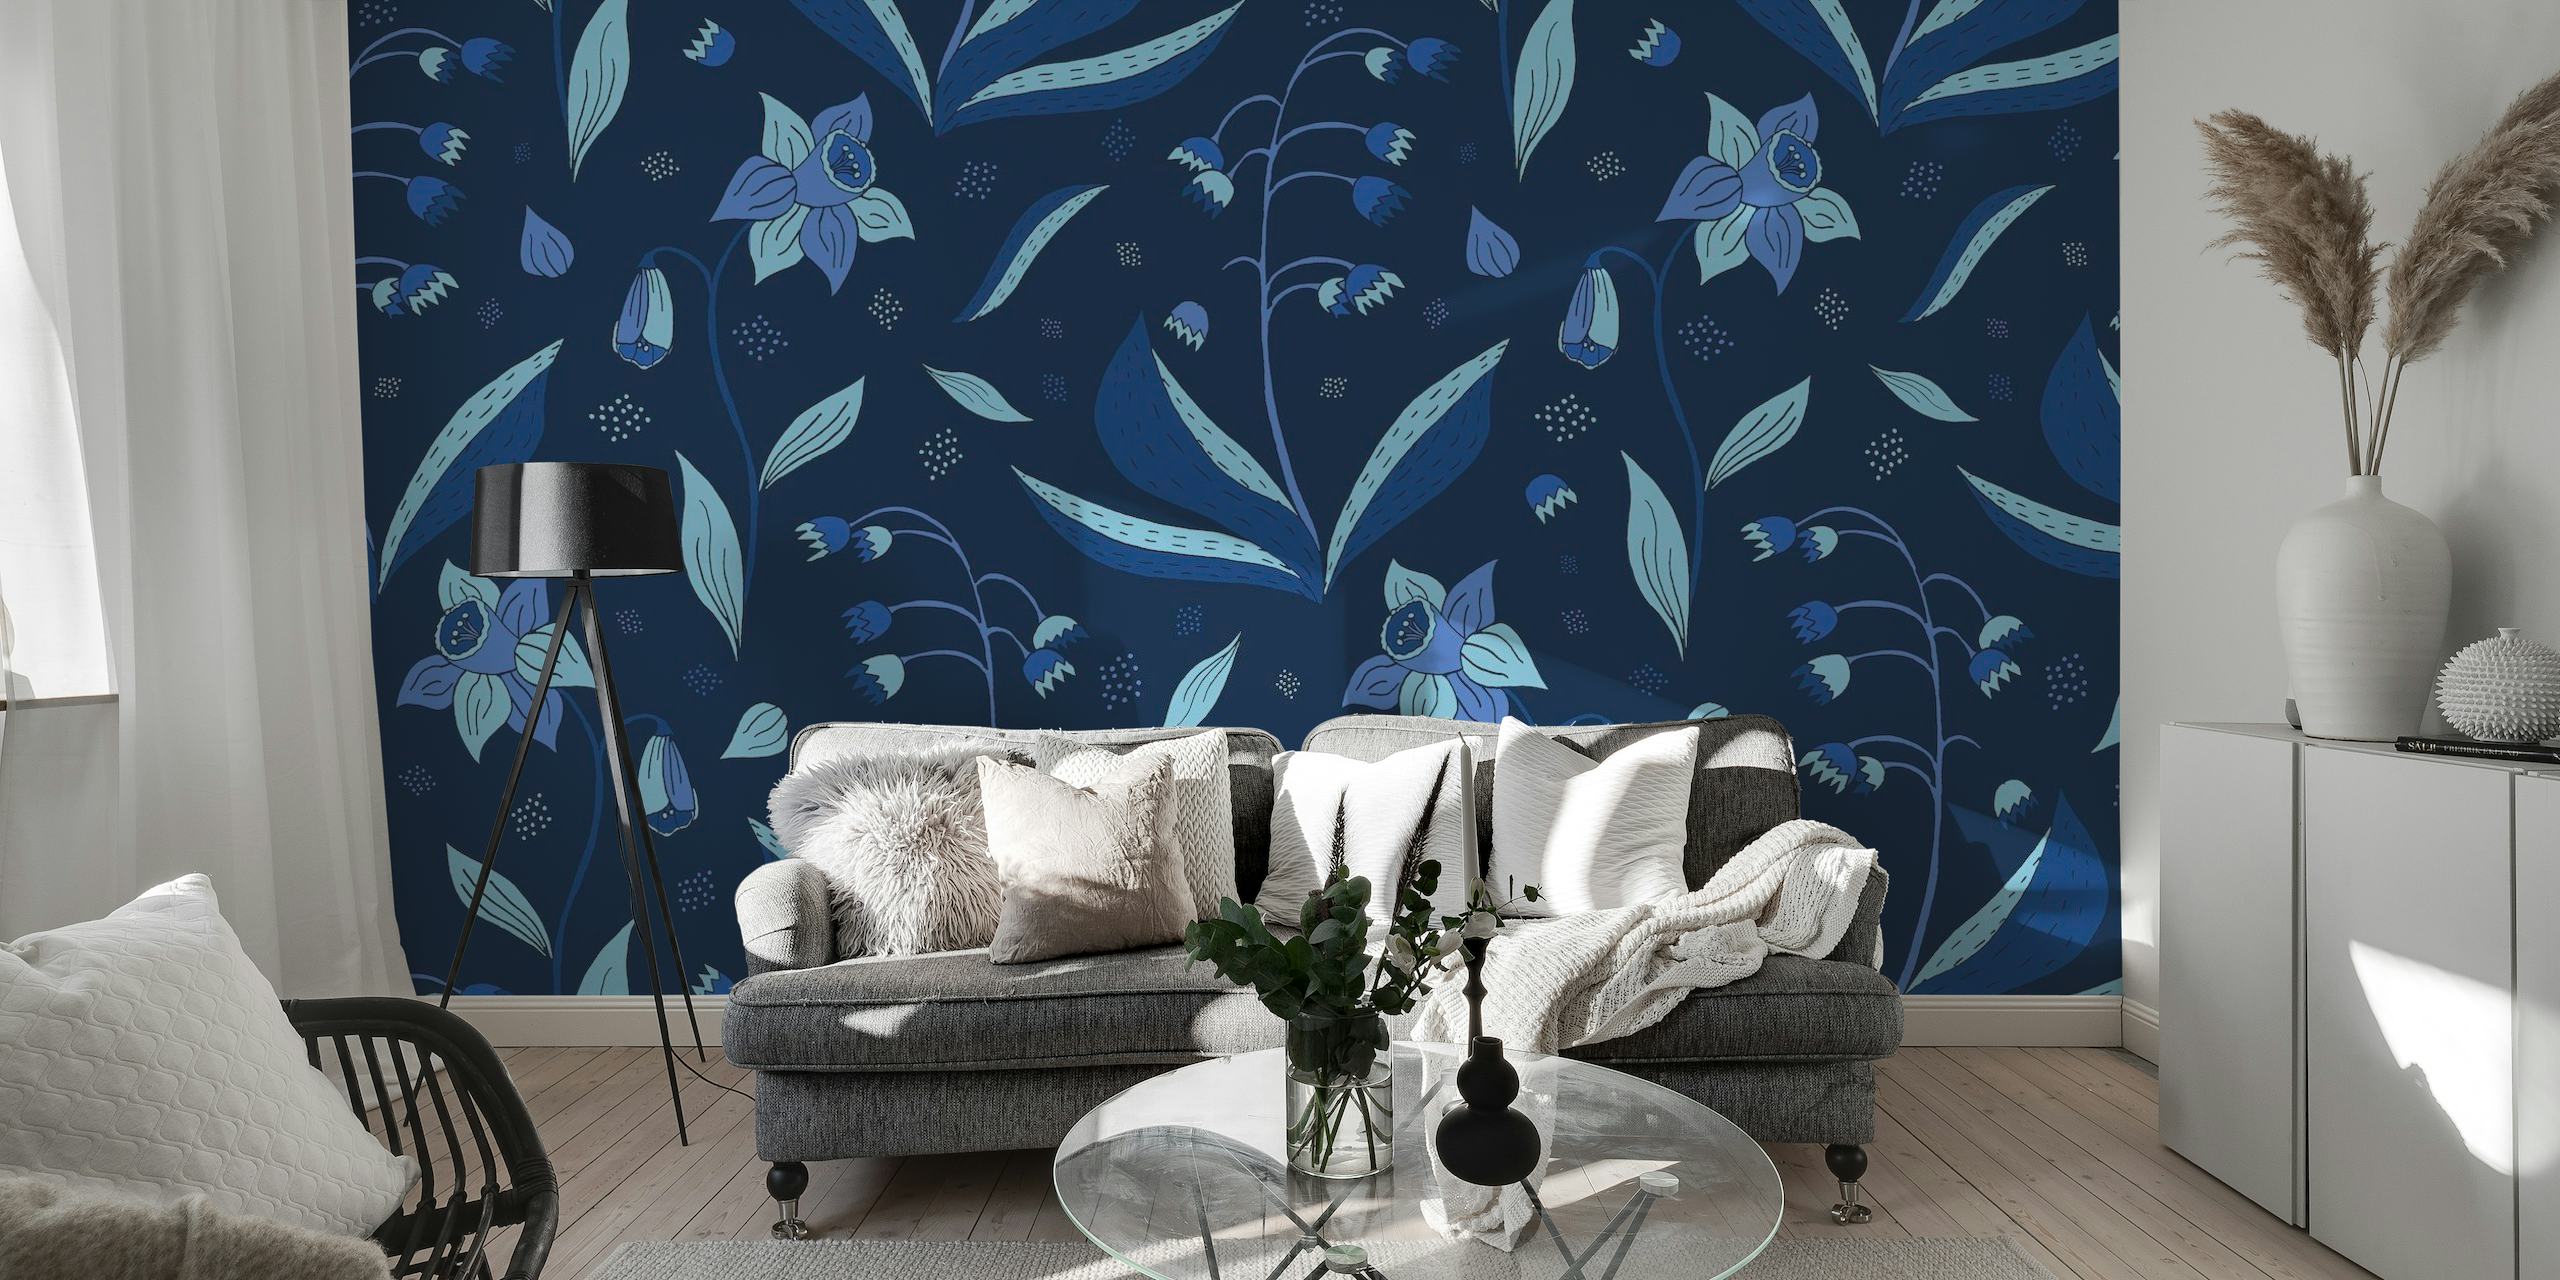 Fotomural vinílico de parede Midnight Blue Garden com padrões florais